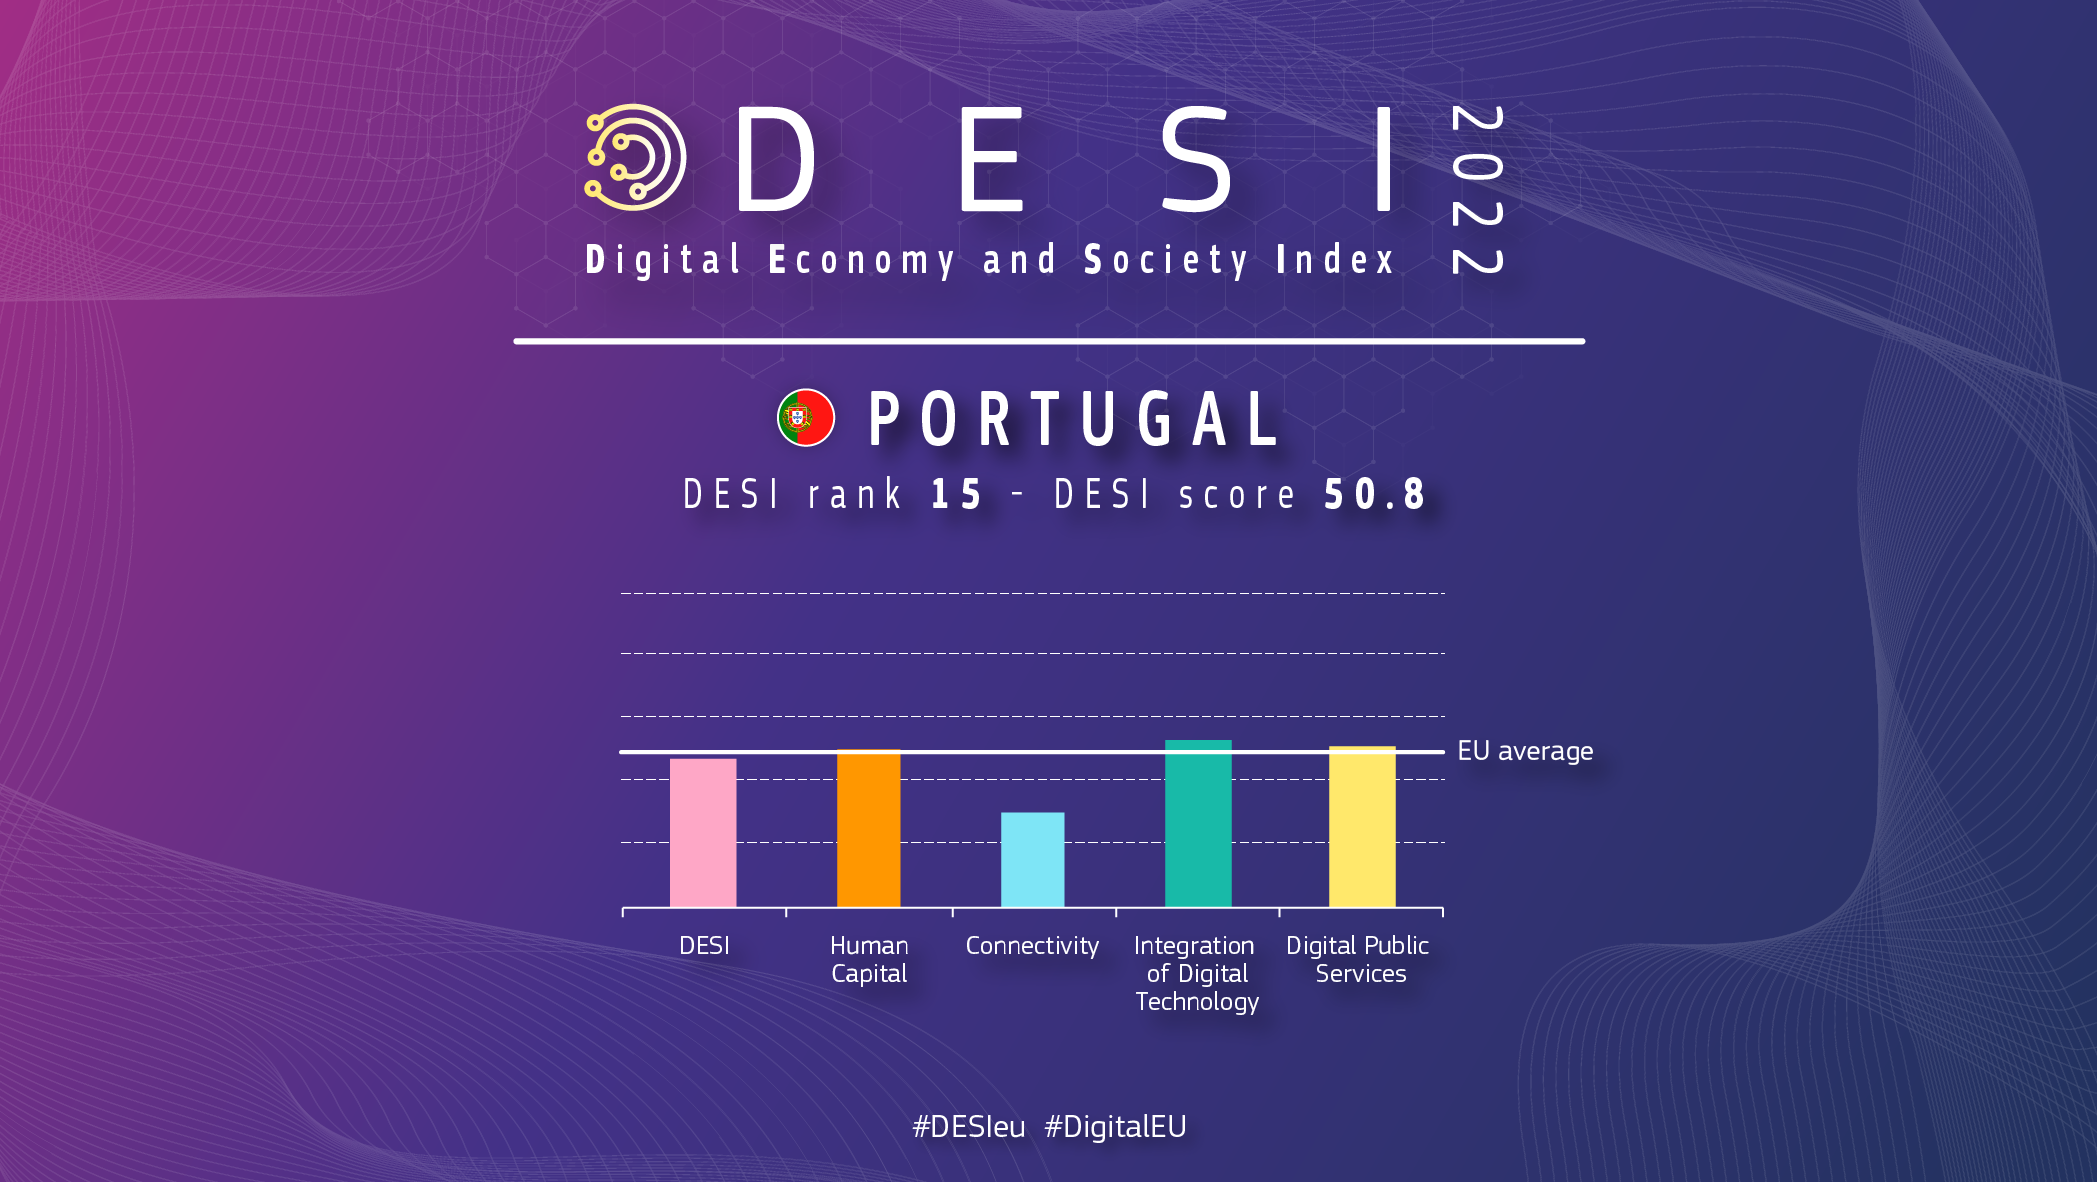 Grafisks pārskats par Portugāli DESI, kurā vērtējums ir 15 ar punktu skaitu 50,8